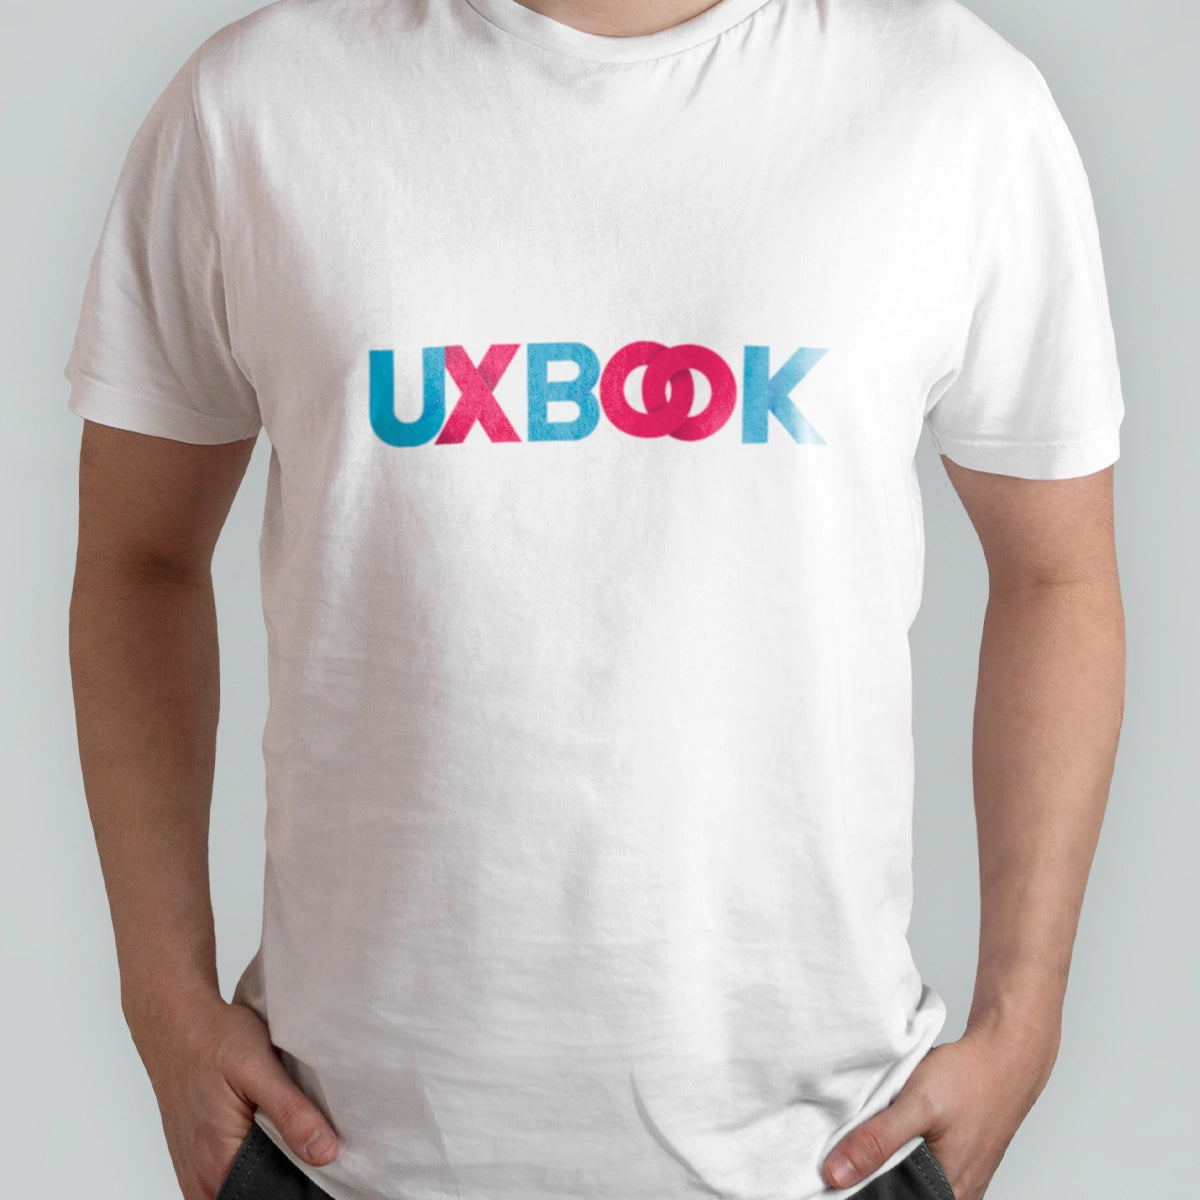 uxbook.com